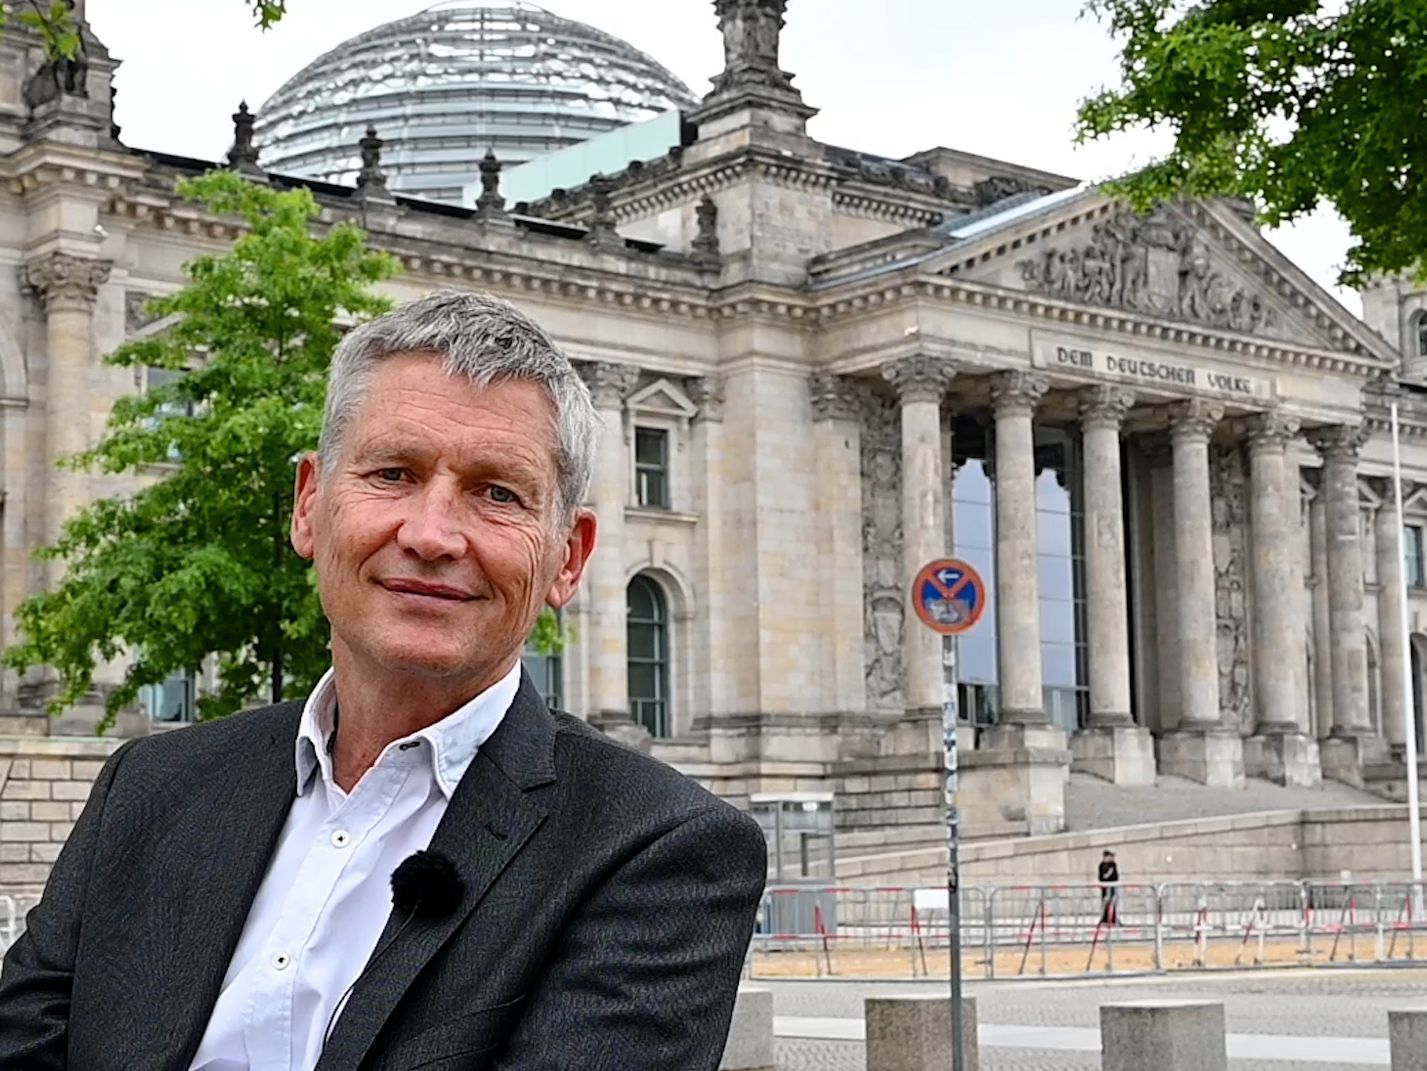 Wolfram König, der Präsident des Bundesamtes für die Sicherheit der nuklearen Entsorgung, steht vor dem Reichstag in Berlin.